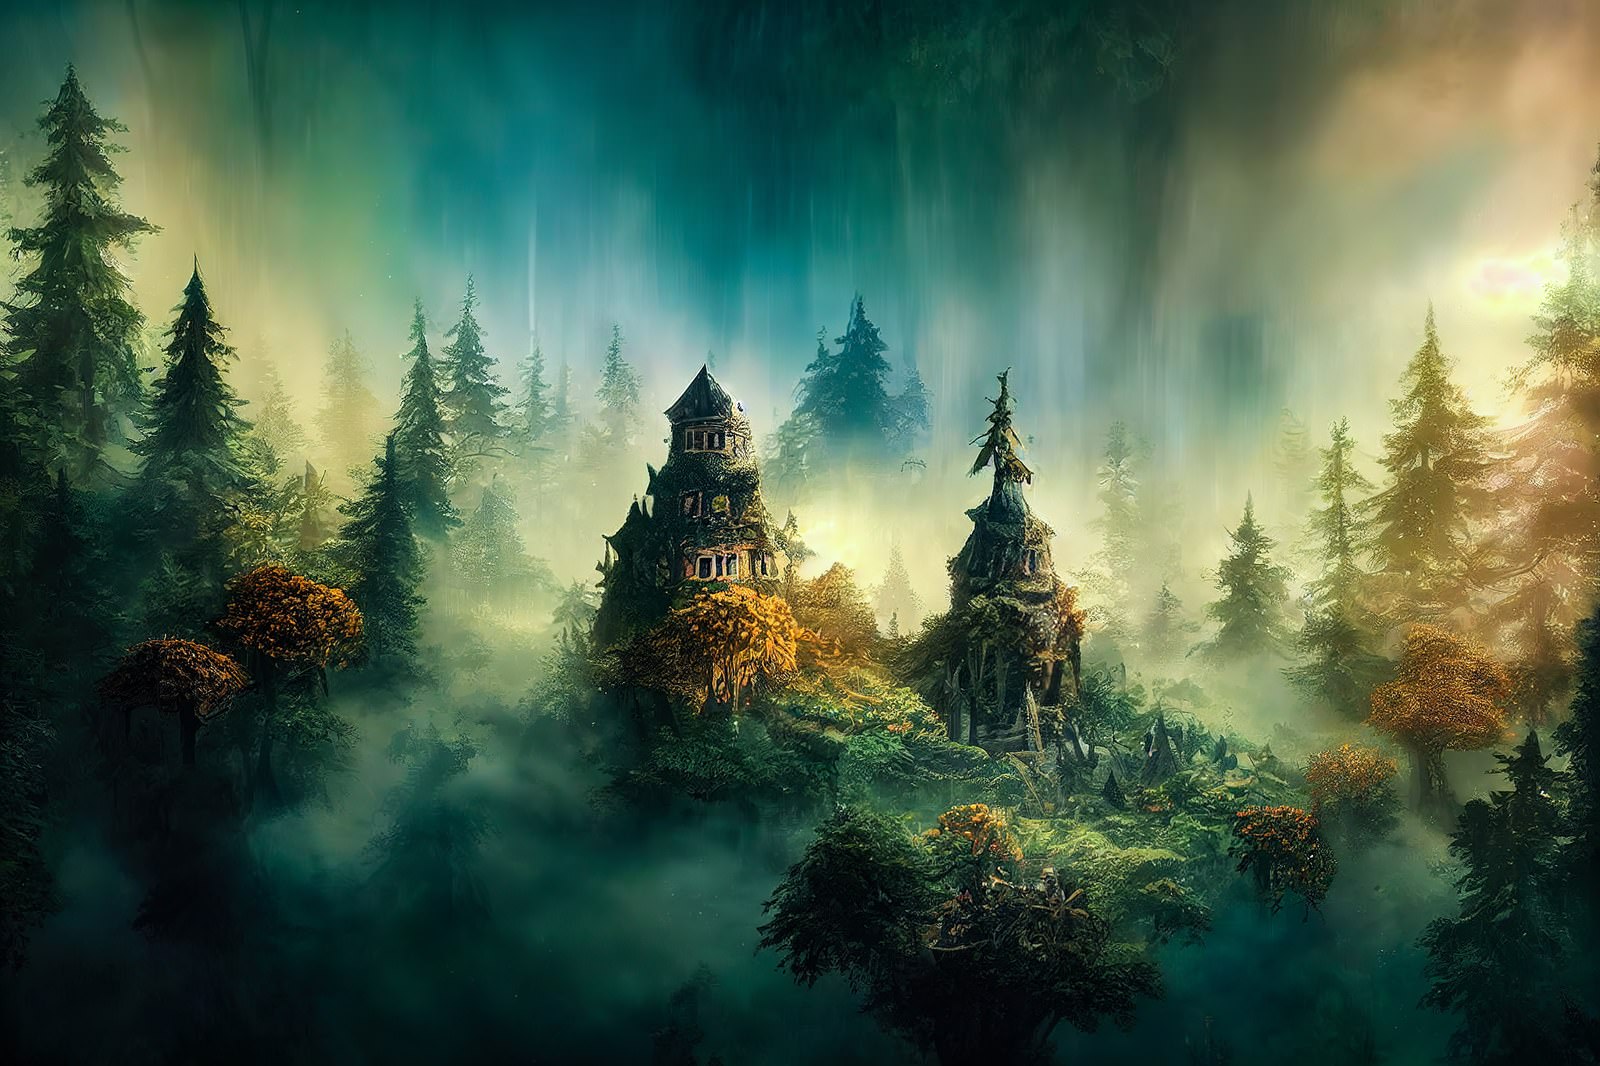 「濃霧に包まれた魔女の家 | フリー素材のぱくたそ」の写真